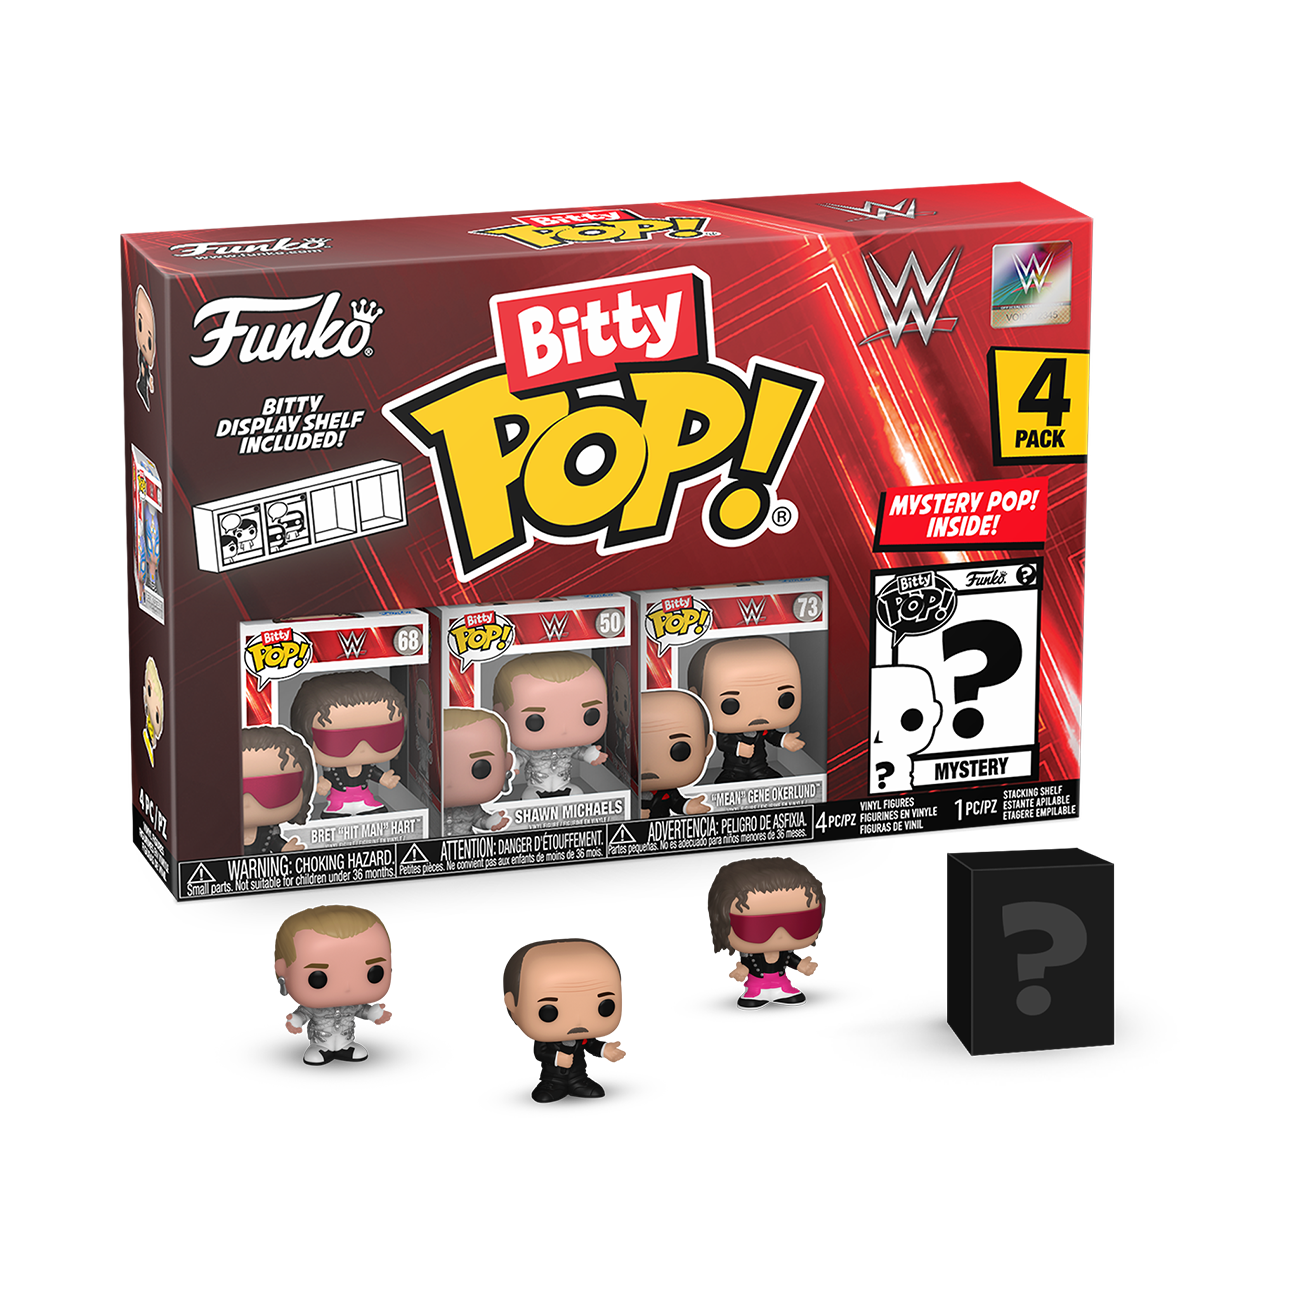 Funko Bitty POP! WWE Vinyl Figure Set 4-Pack (Bret Hart, Shawn Michaels, Gene Okerlund, Mystery Pop!)